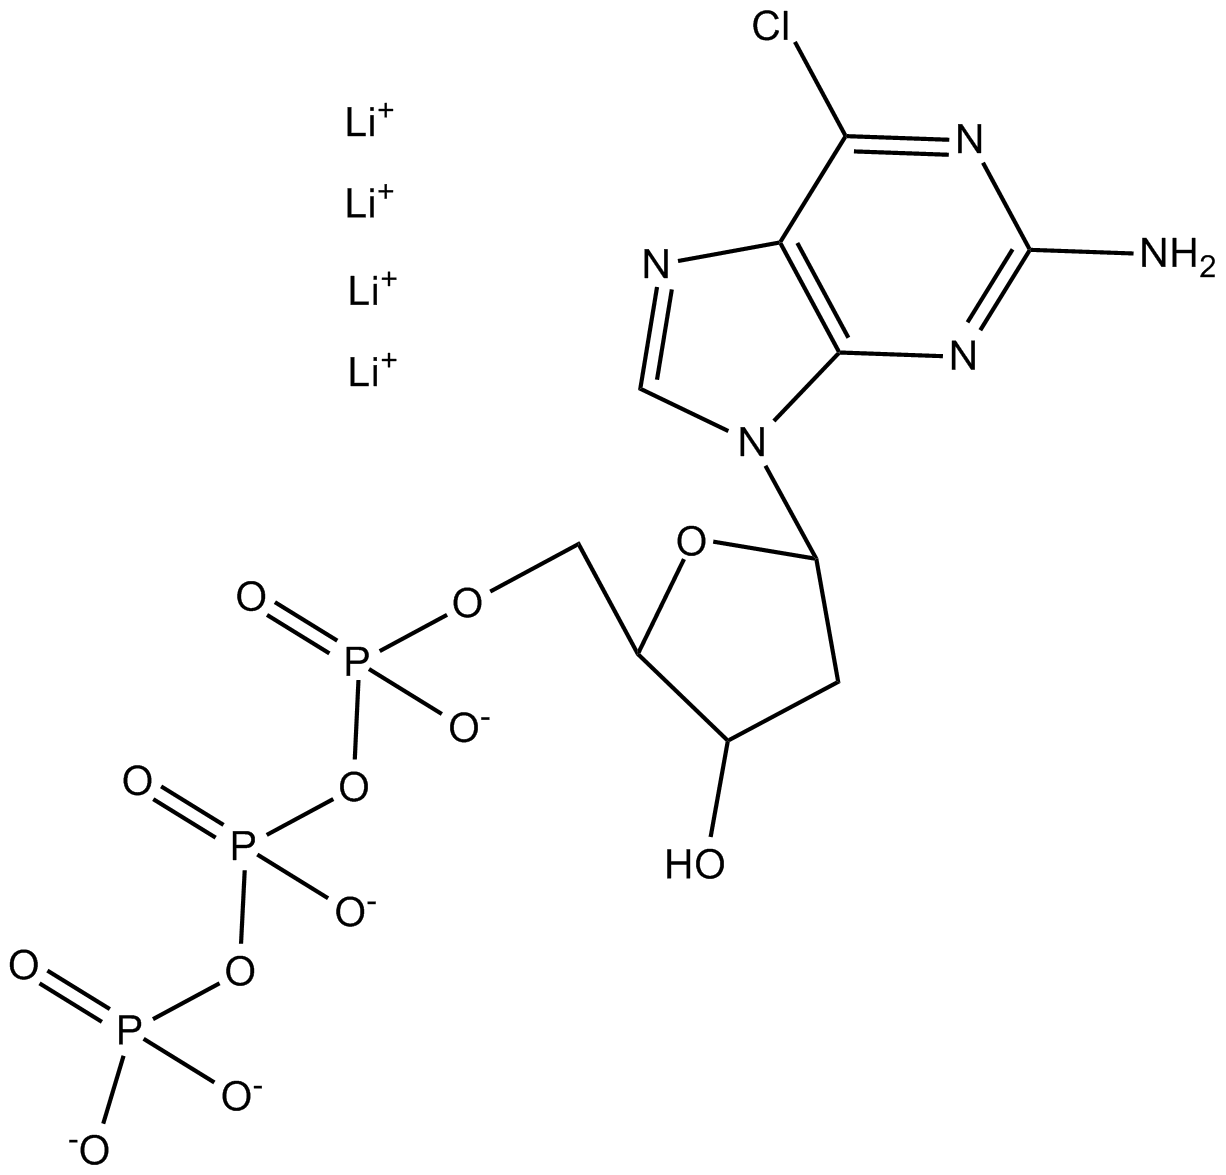 2-Amino-6-Cl-purine-drTP Chemische Struktur